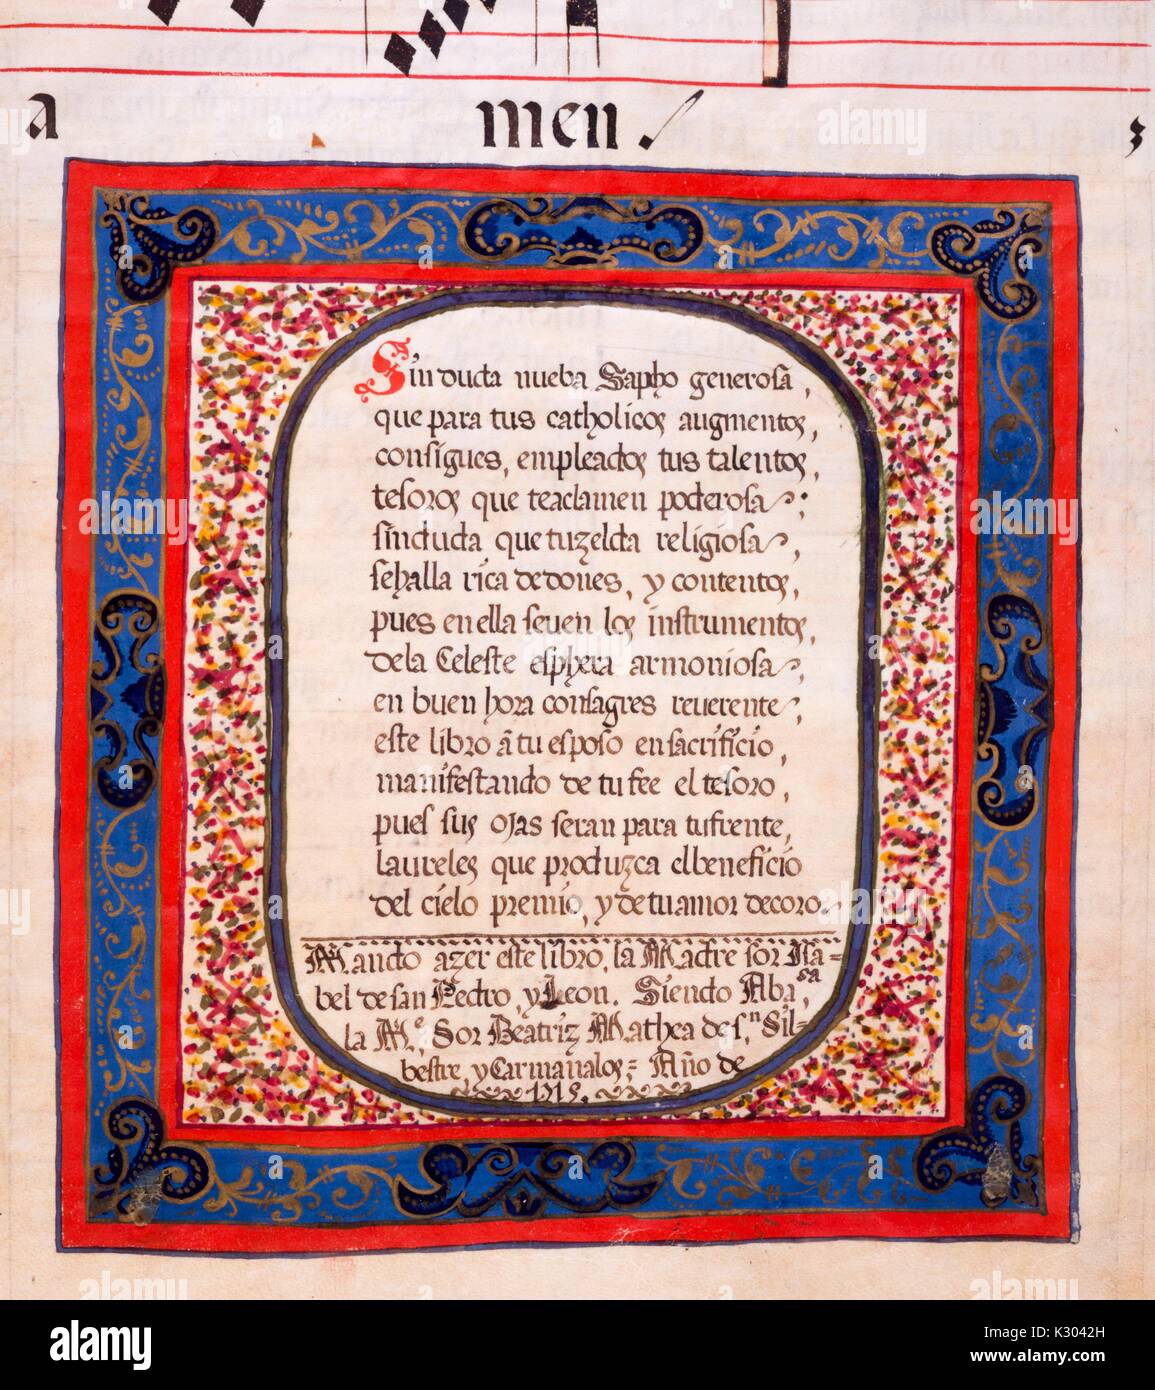 Bilderhandschrift Seite angezeigte Text von einem reich verzierten Rahmen umgeben, von einem lateinischen Handschrift in Spanien im 18. Jahrhundert erstellt, 1715. Stockfoto